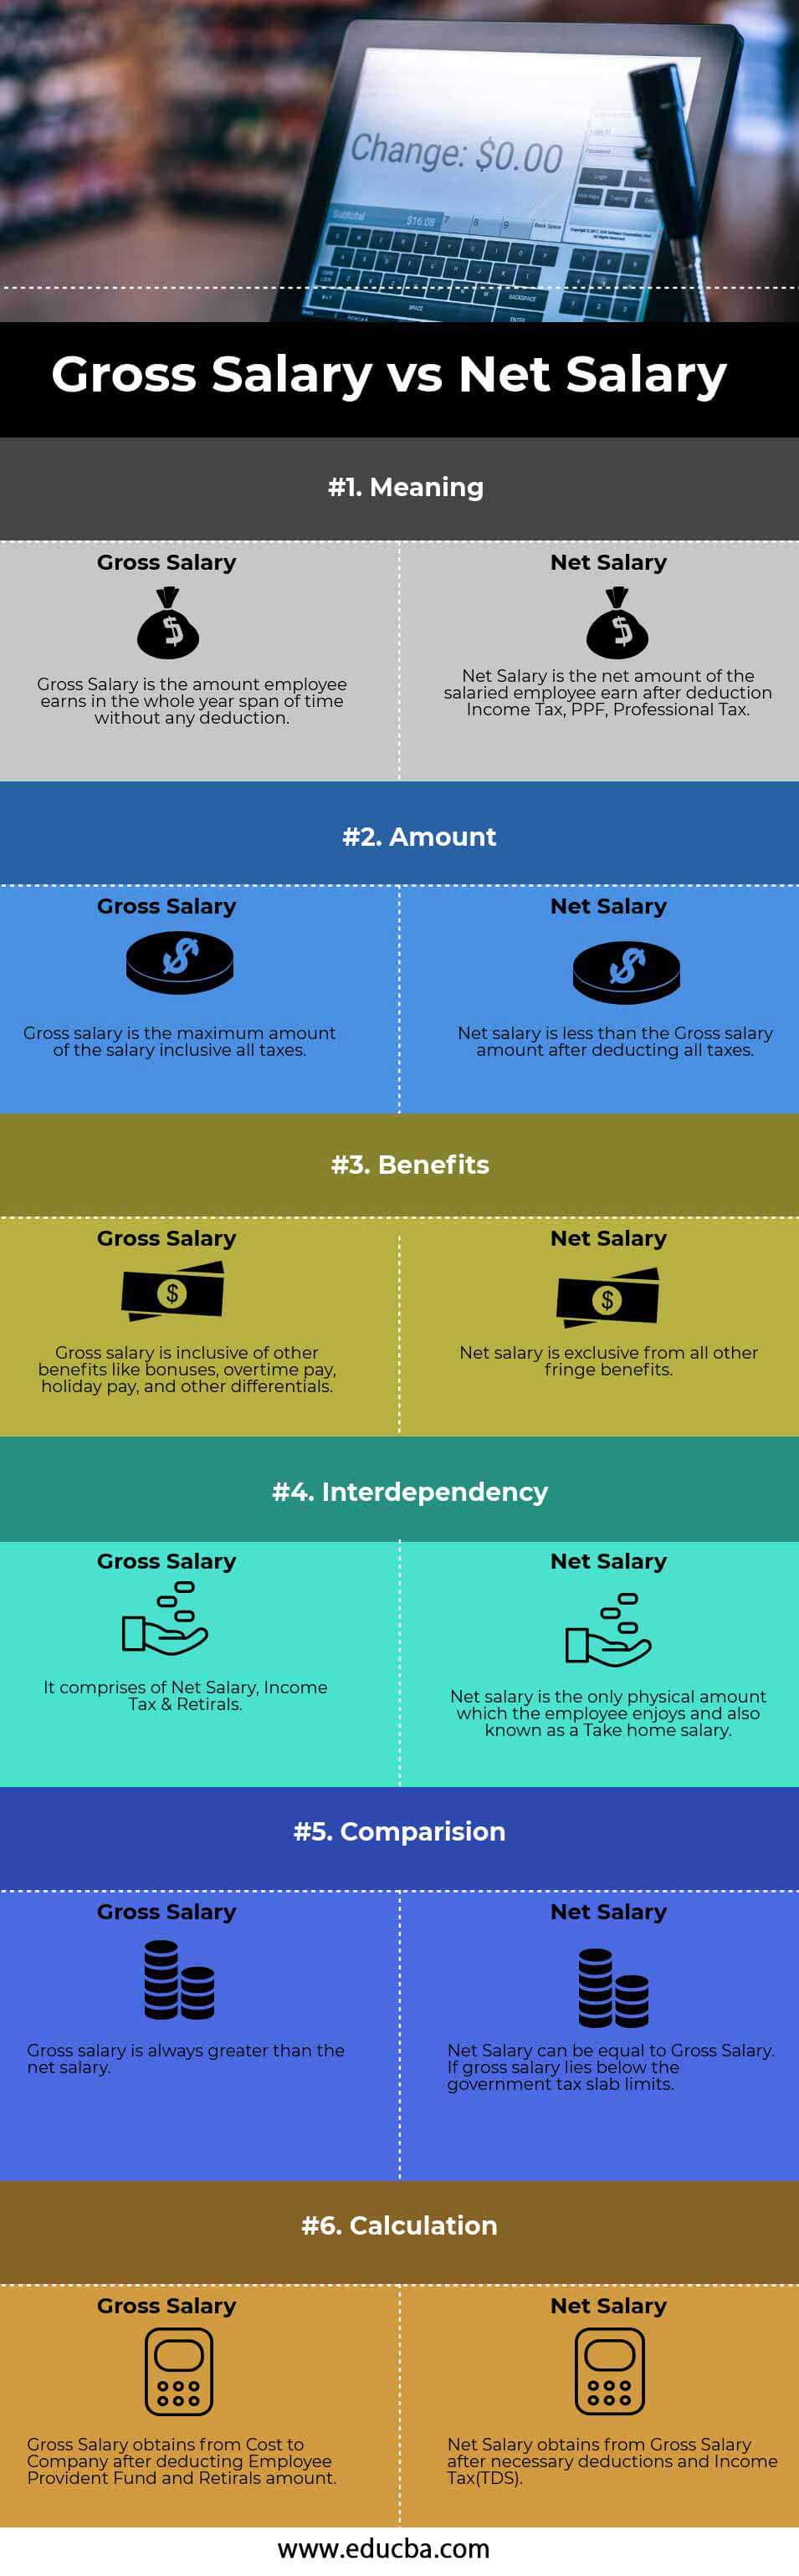 Gross Salary vs Net Salary info